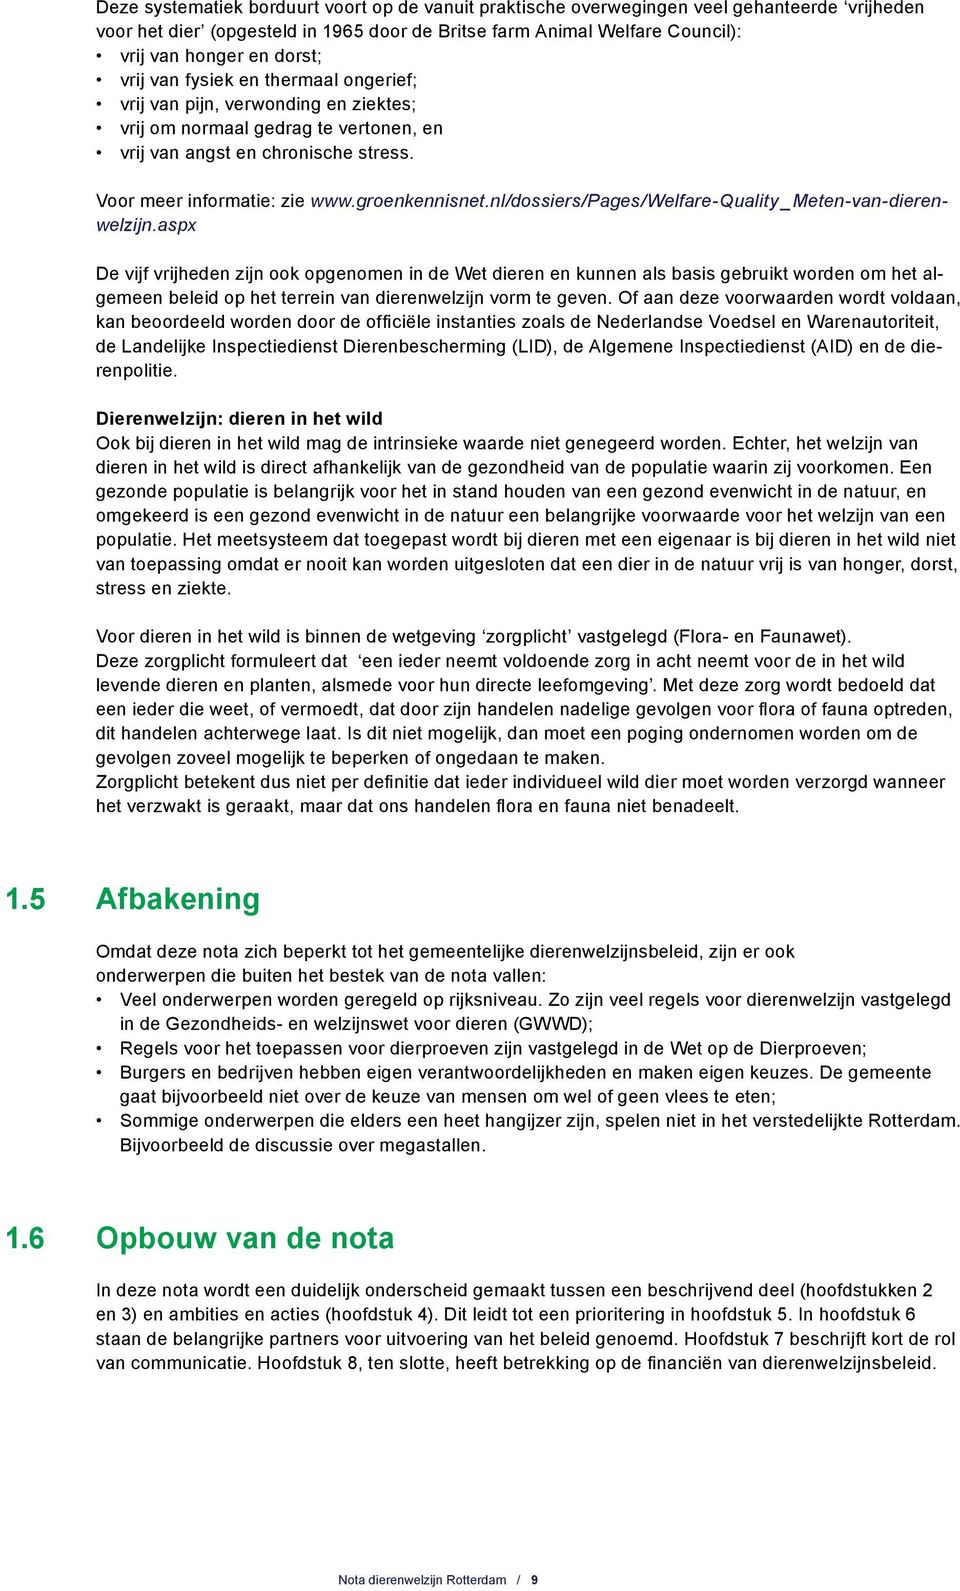 nl/dossiers/pages/welfare-quality _Meten-van-dierenwelzijn.